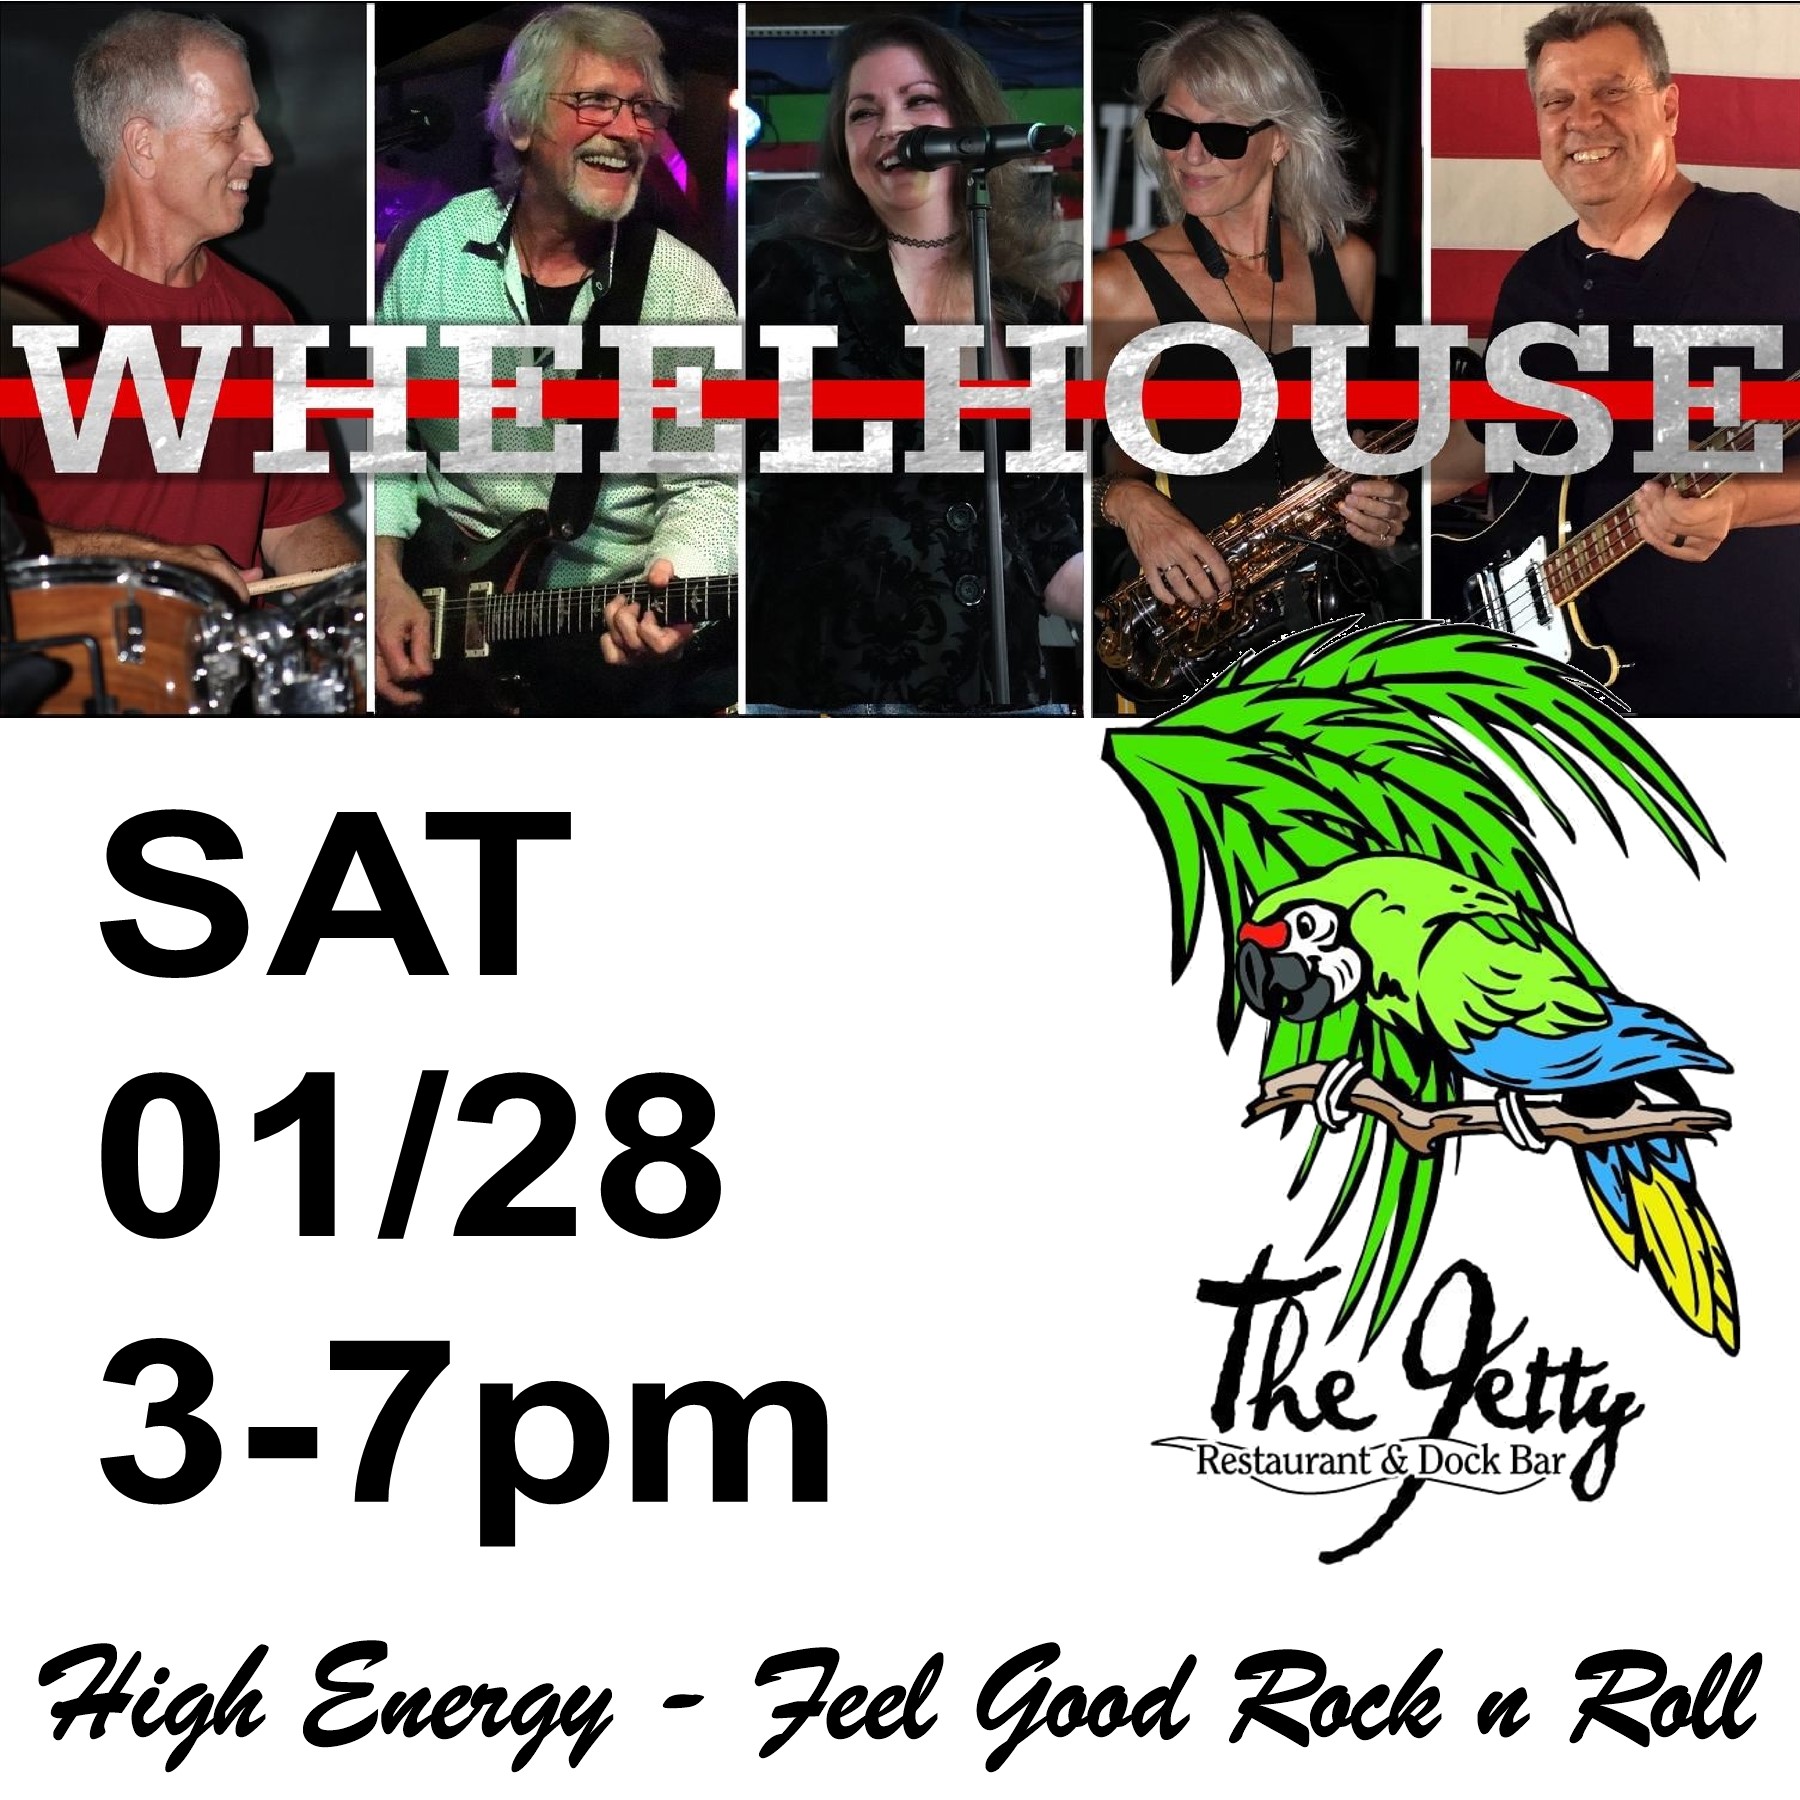 Wheelhouse band at the Jetty Dock Bar